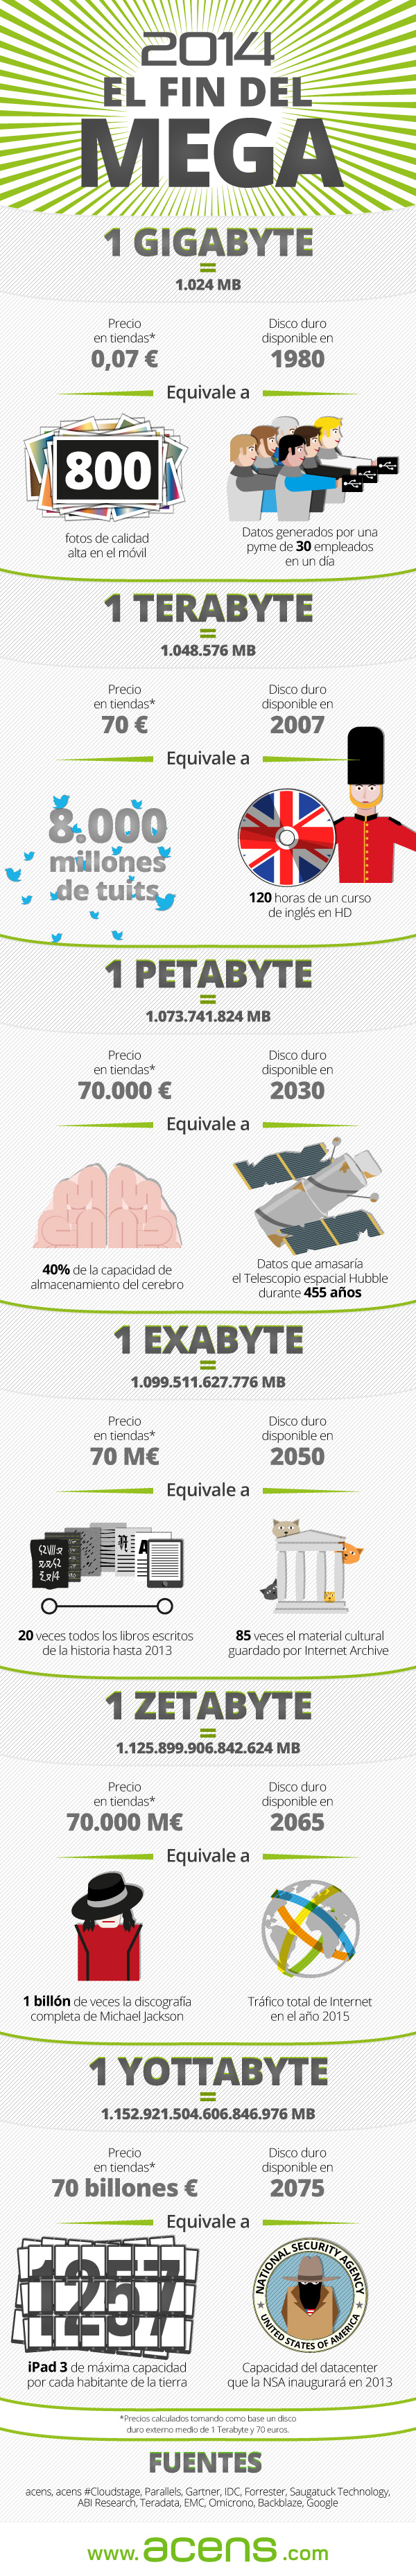 infografia-2014-el-fin-del-mega-acens-cloud